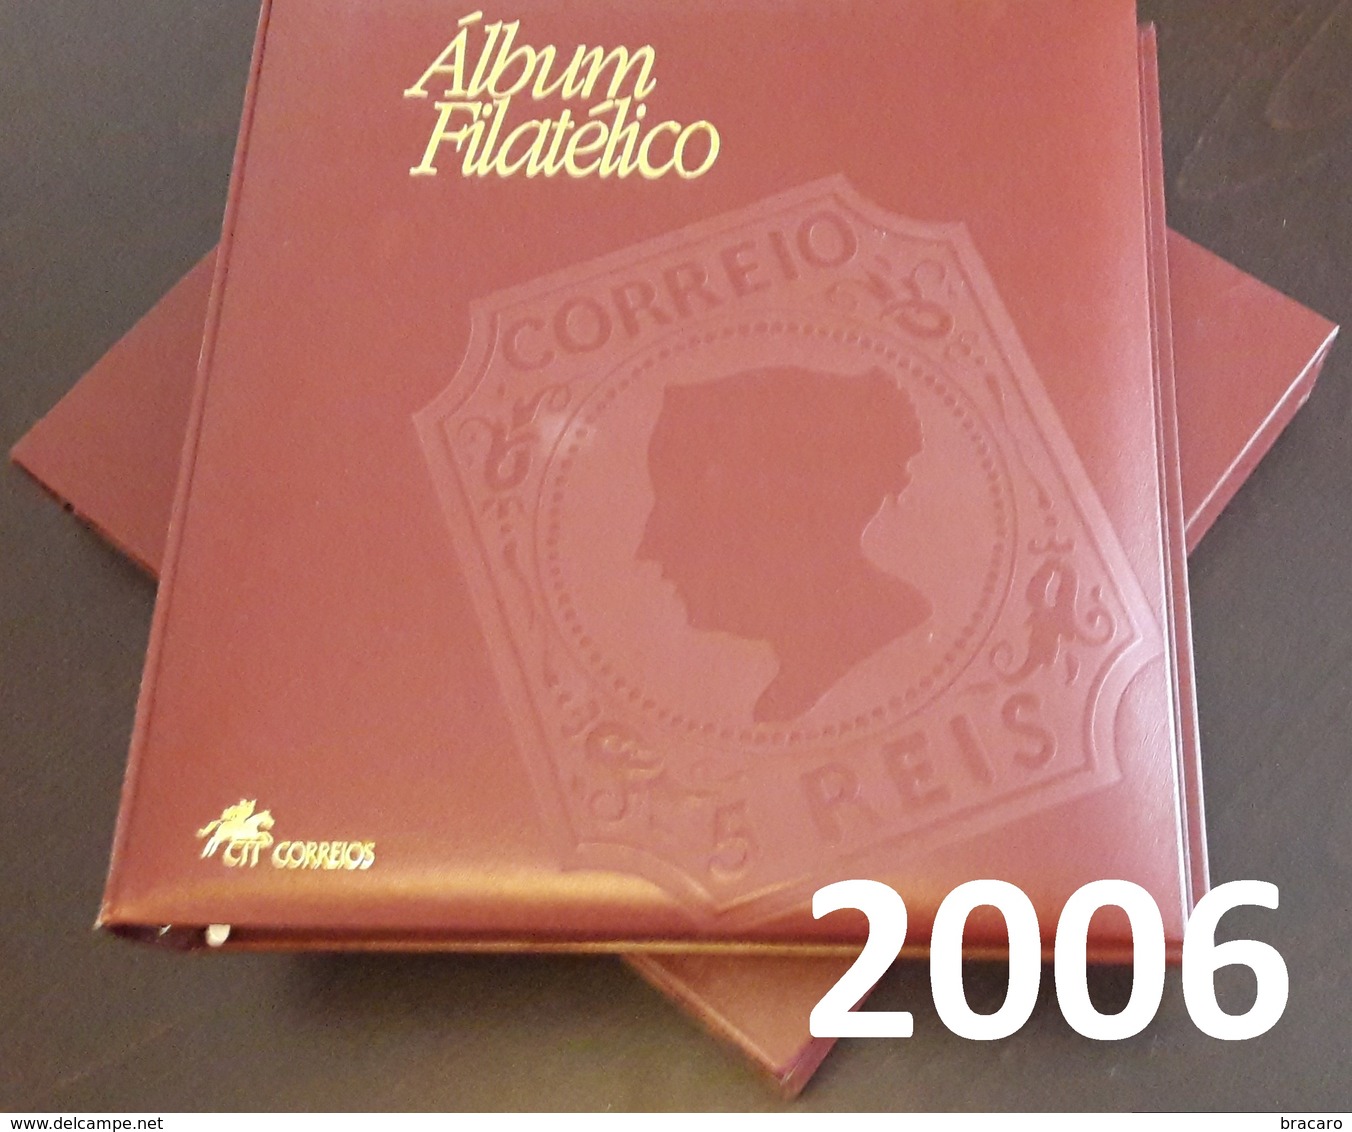 PORTUGAL - ÁLBUM FILATÉLICO - Full Year Stamps + Blocks + ATM / Machine Stamps - MNH - 2006 - Buch Des Jahres